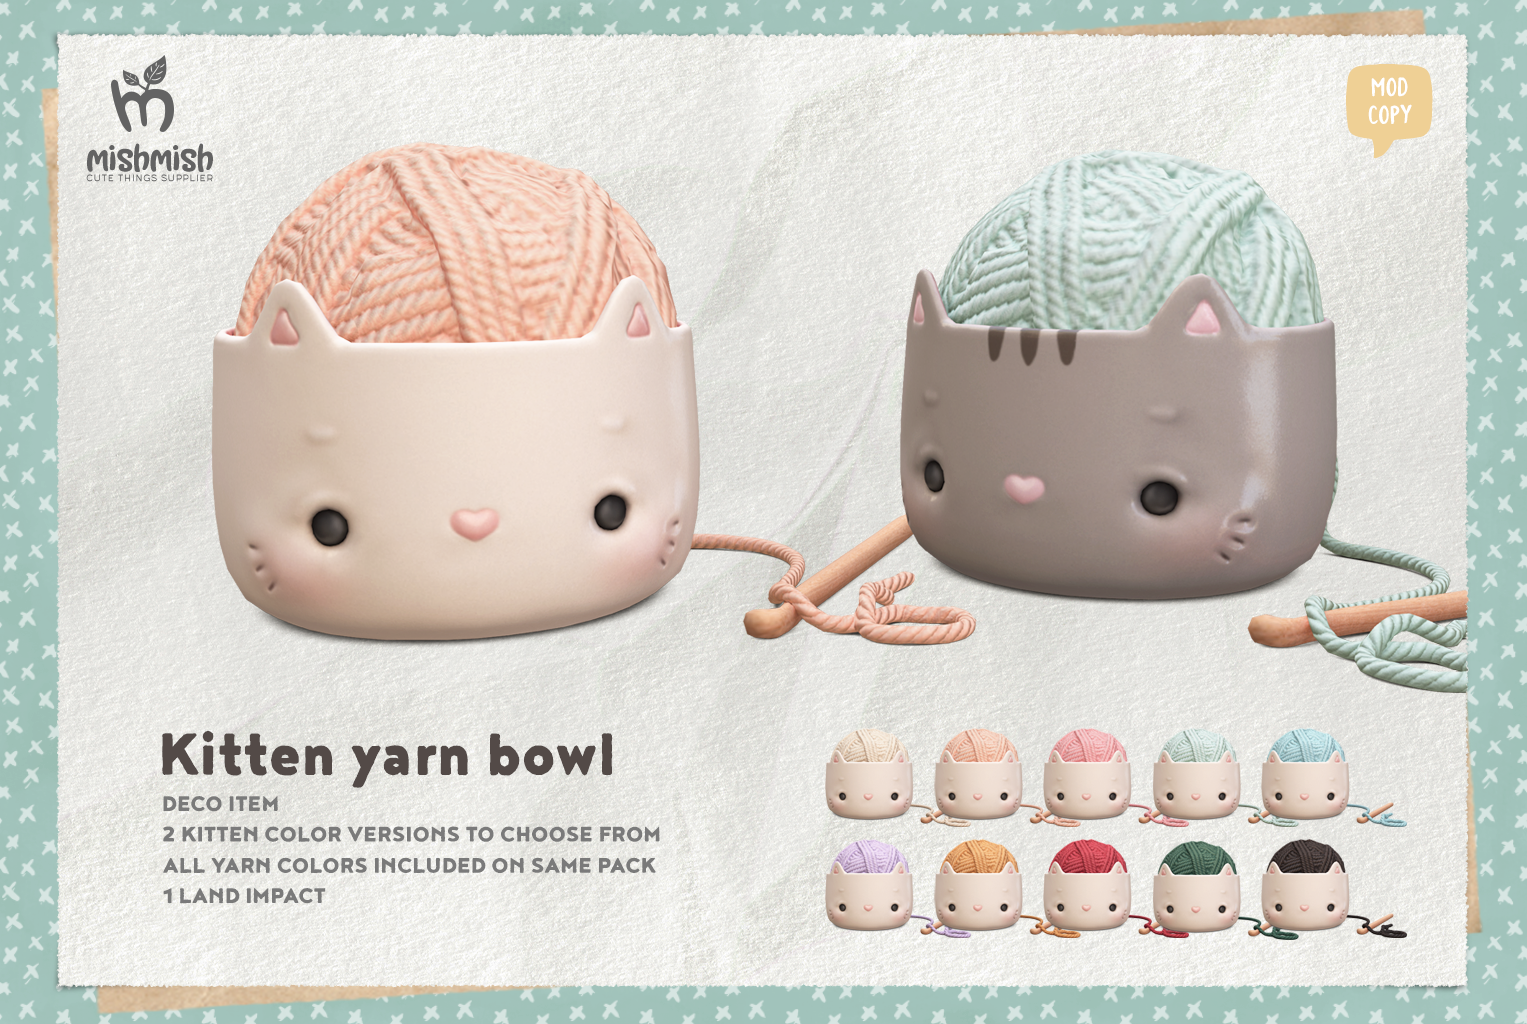 MishMish – Kitten Yarn Bowl